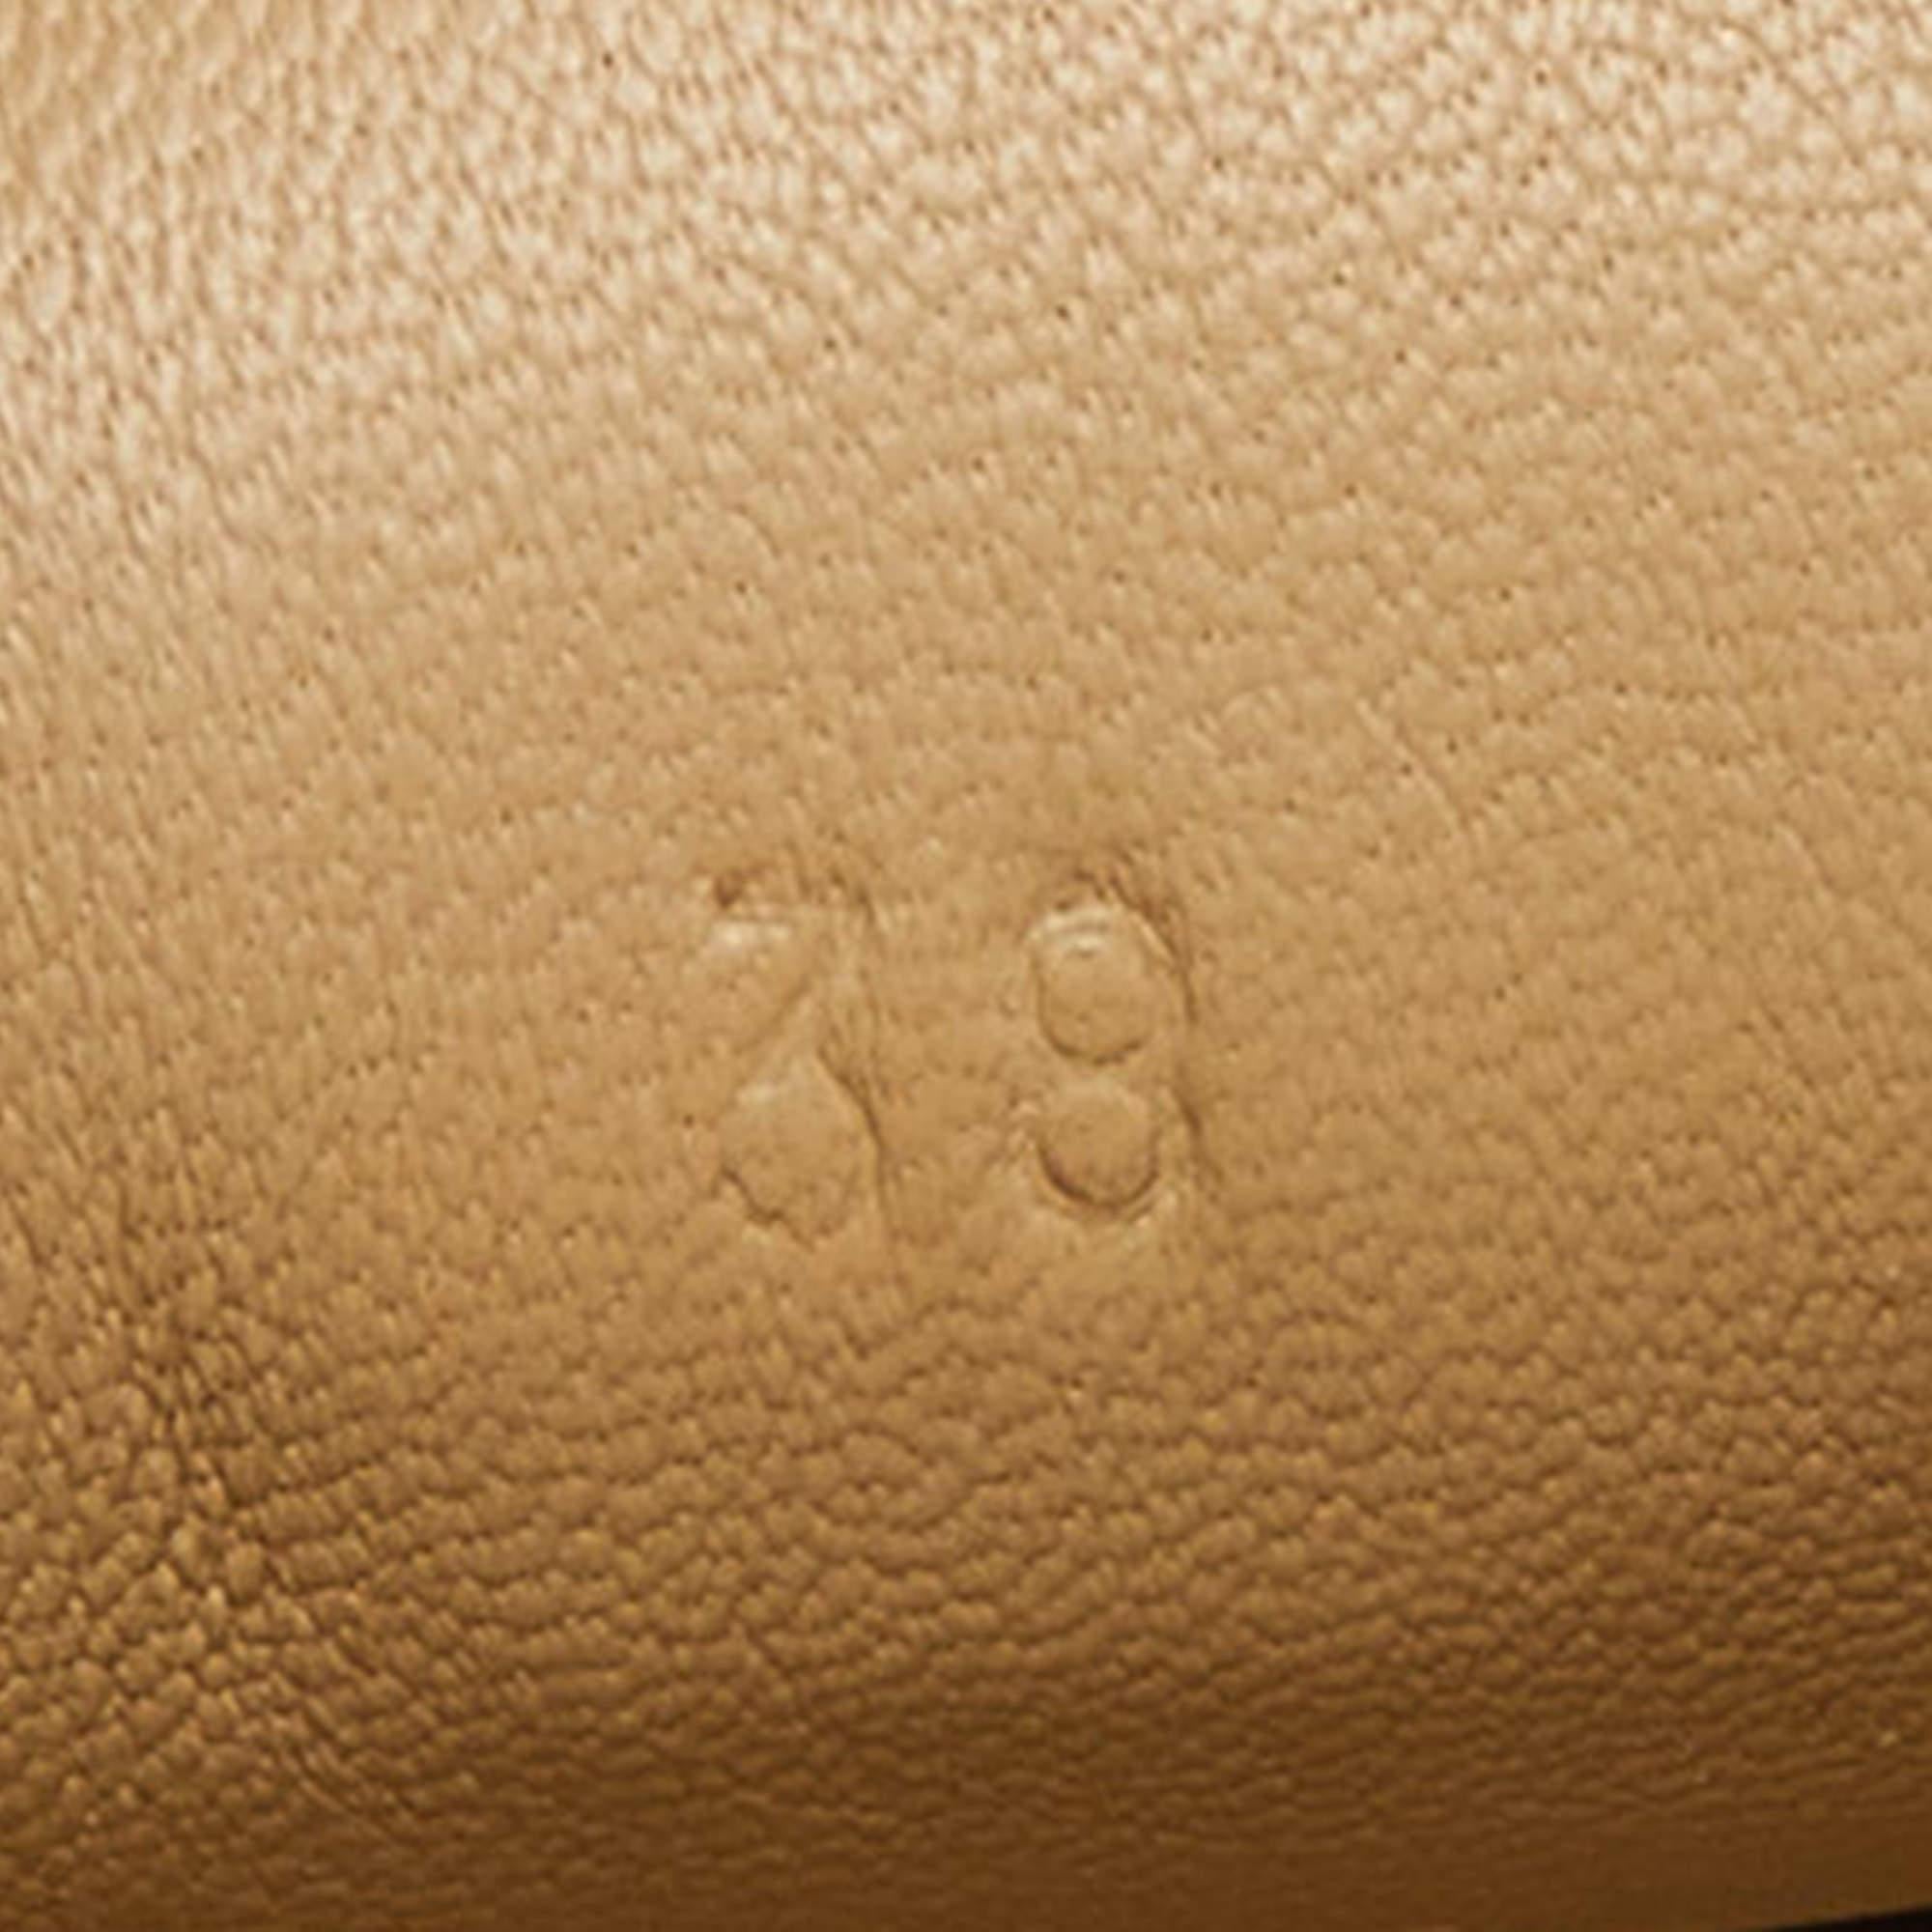 Hermes Black Brogue Leather Tassel Slip On Sneakers Size 38 4